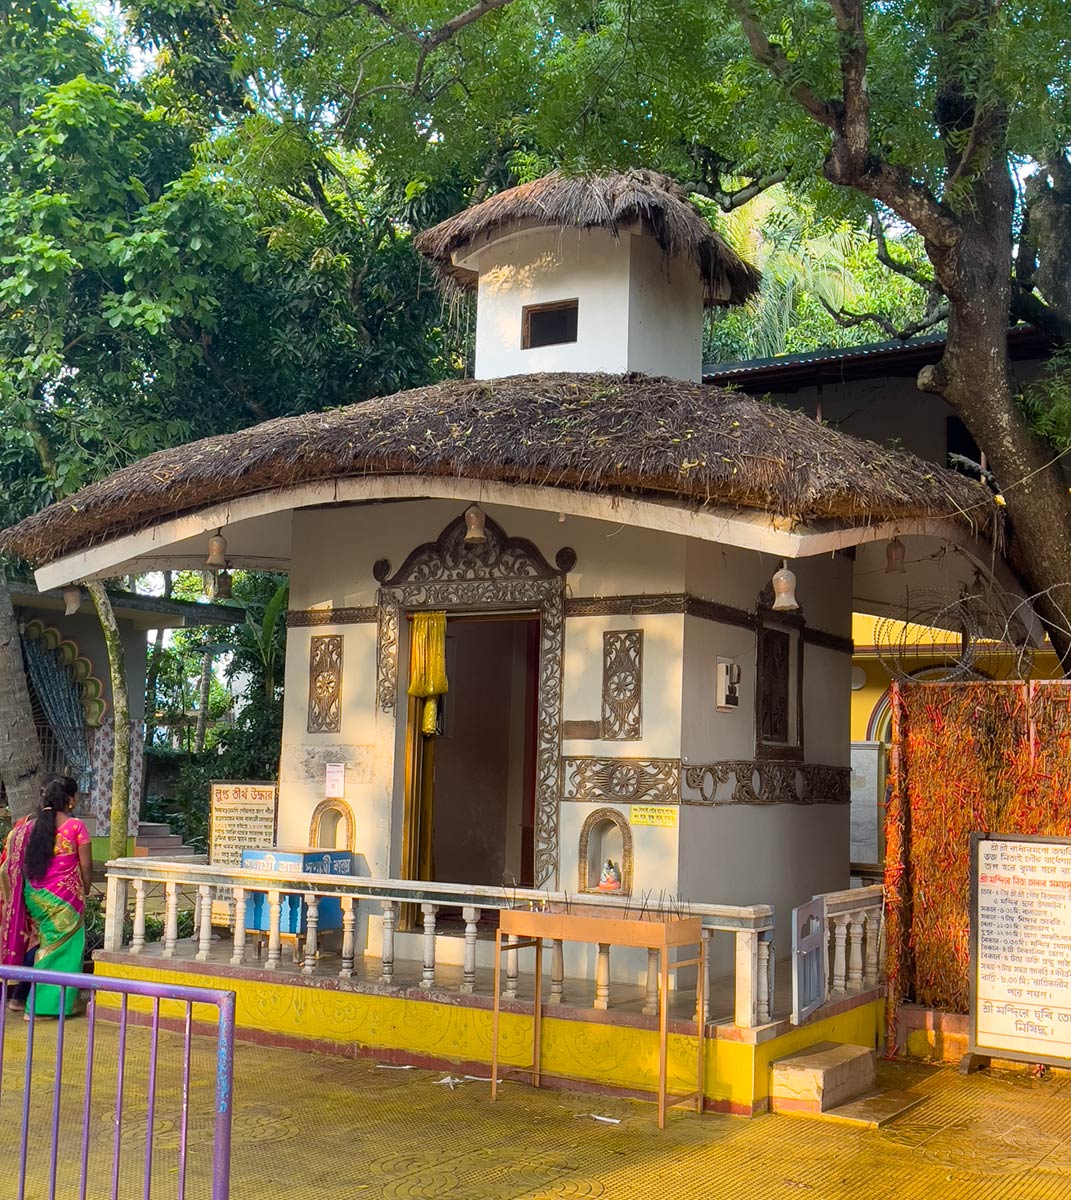 श्री चैतन्य का जन्मस्थान मंदिर, नबद्वीप